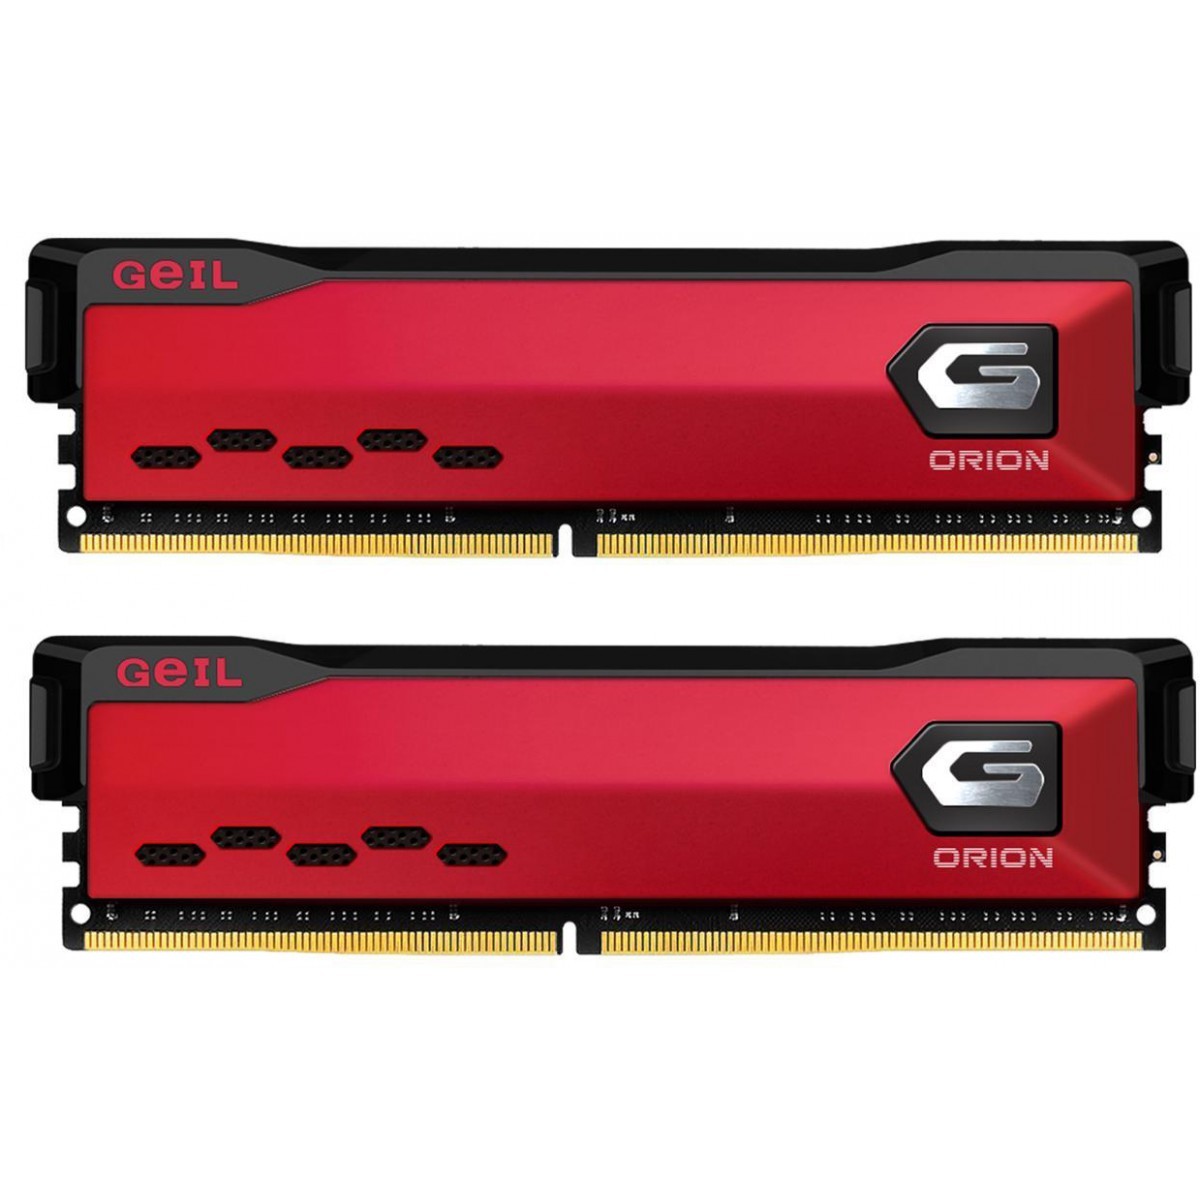 Memória DDR4 Geil Orion, 16GB (2x8GB) 3200MHz, Red, GAOR416GB3200C16BDC